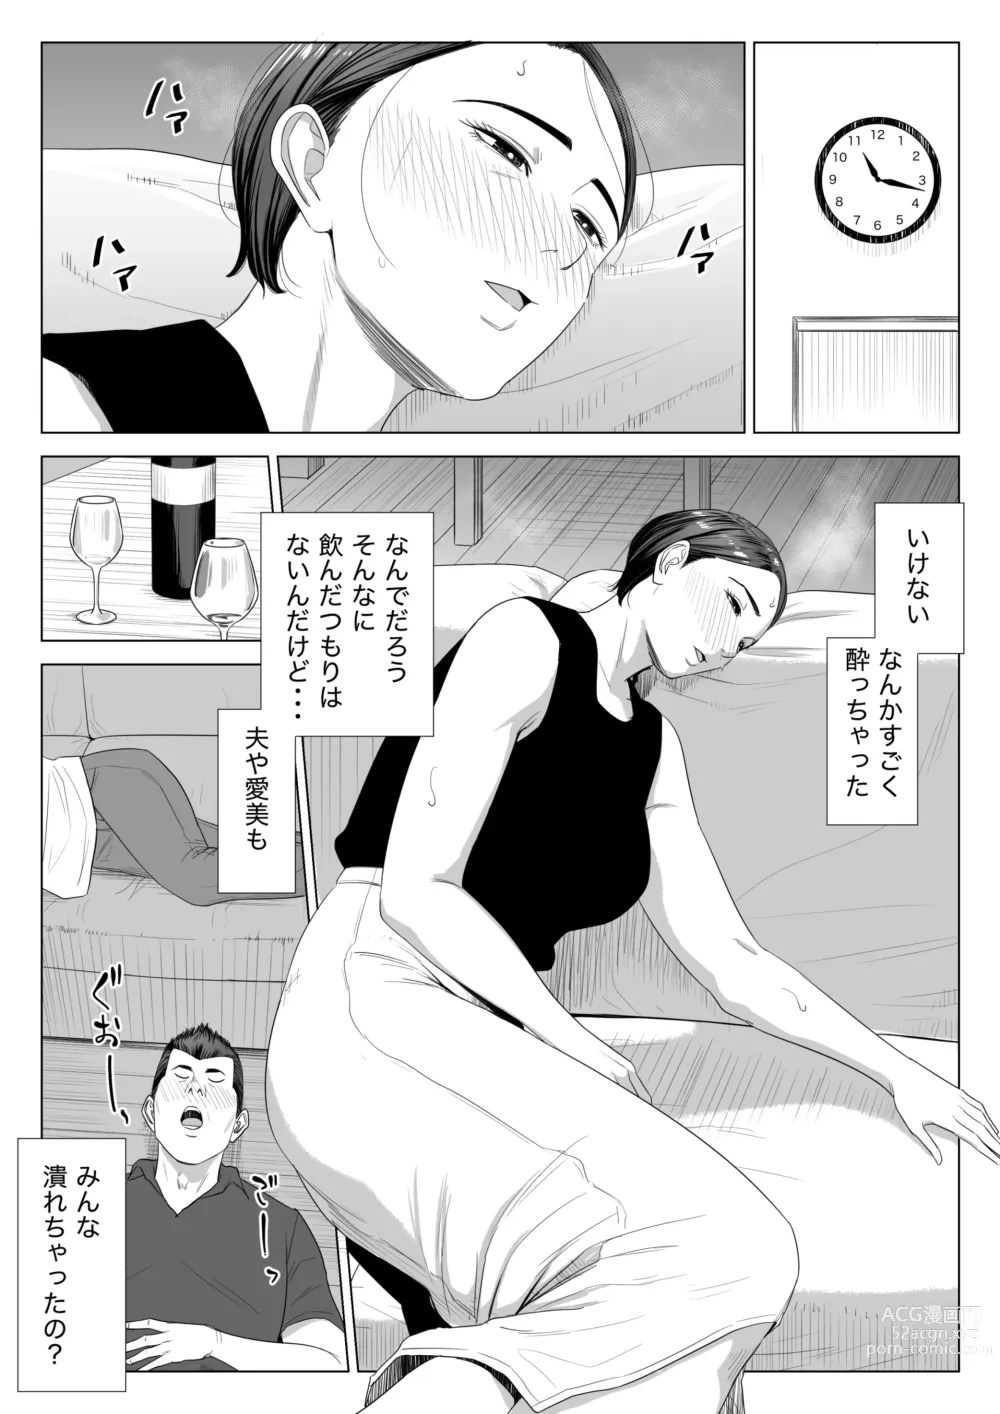 Page 9 of doujinshi Gibo no Tsukaeru Karada.